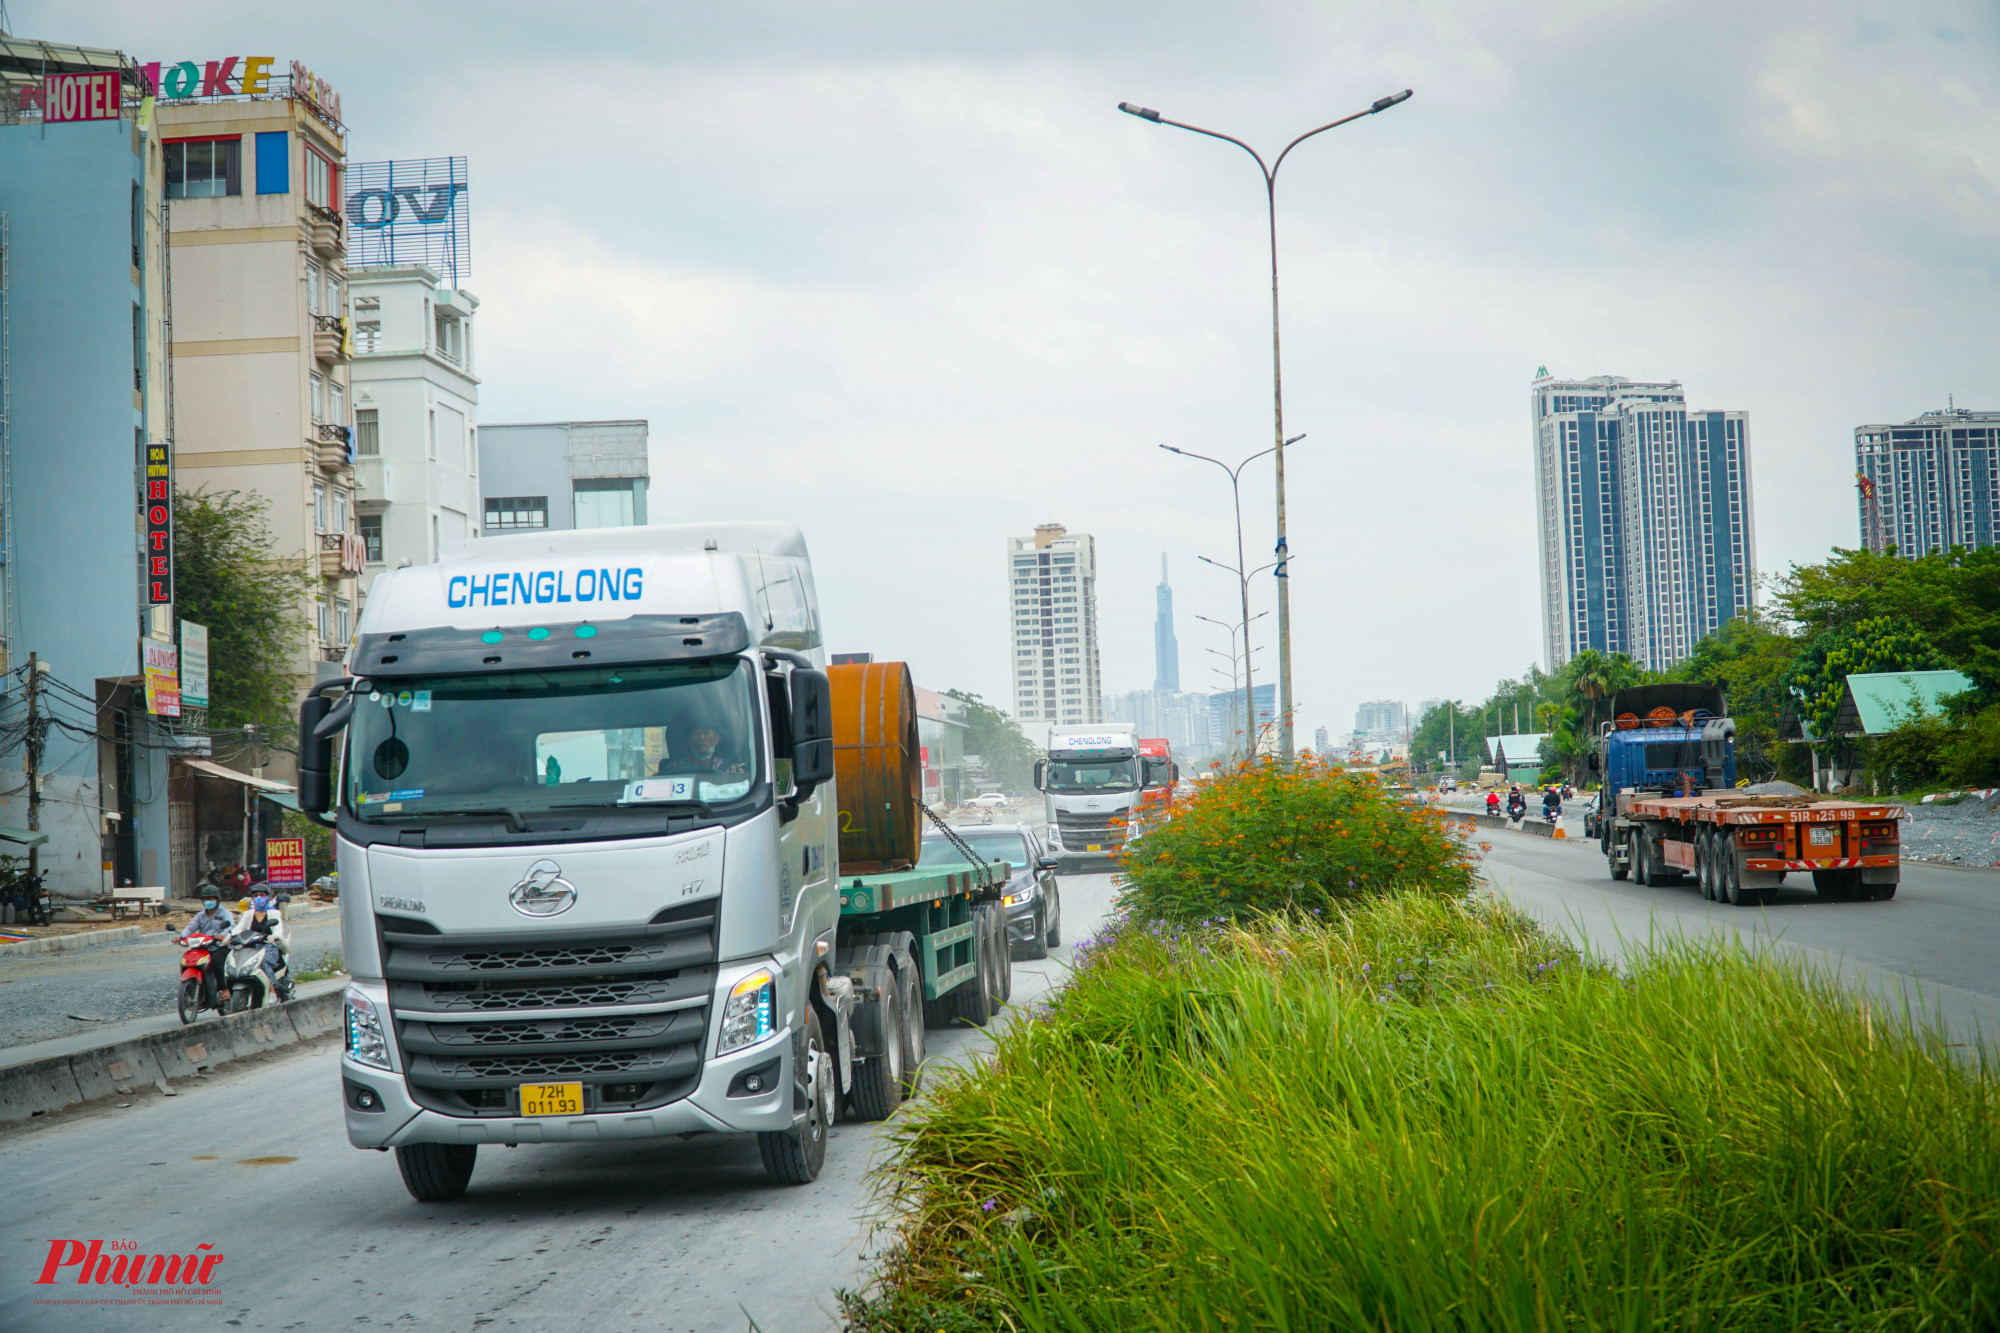 Đây là tuyến giao thông huyết mạch của khu vực Nam TPHCM, tạo điều kiện để phát triển khu đô thị Nam Sài Gòn, khu công nghiệp cảng Hiệp Phước, Phú Mỹ Hưng...